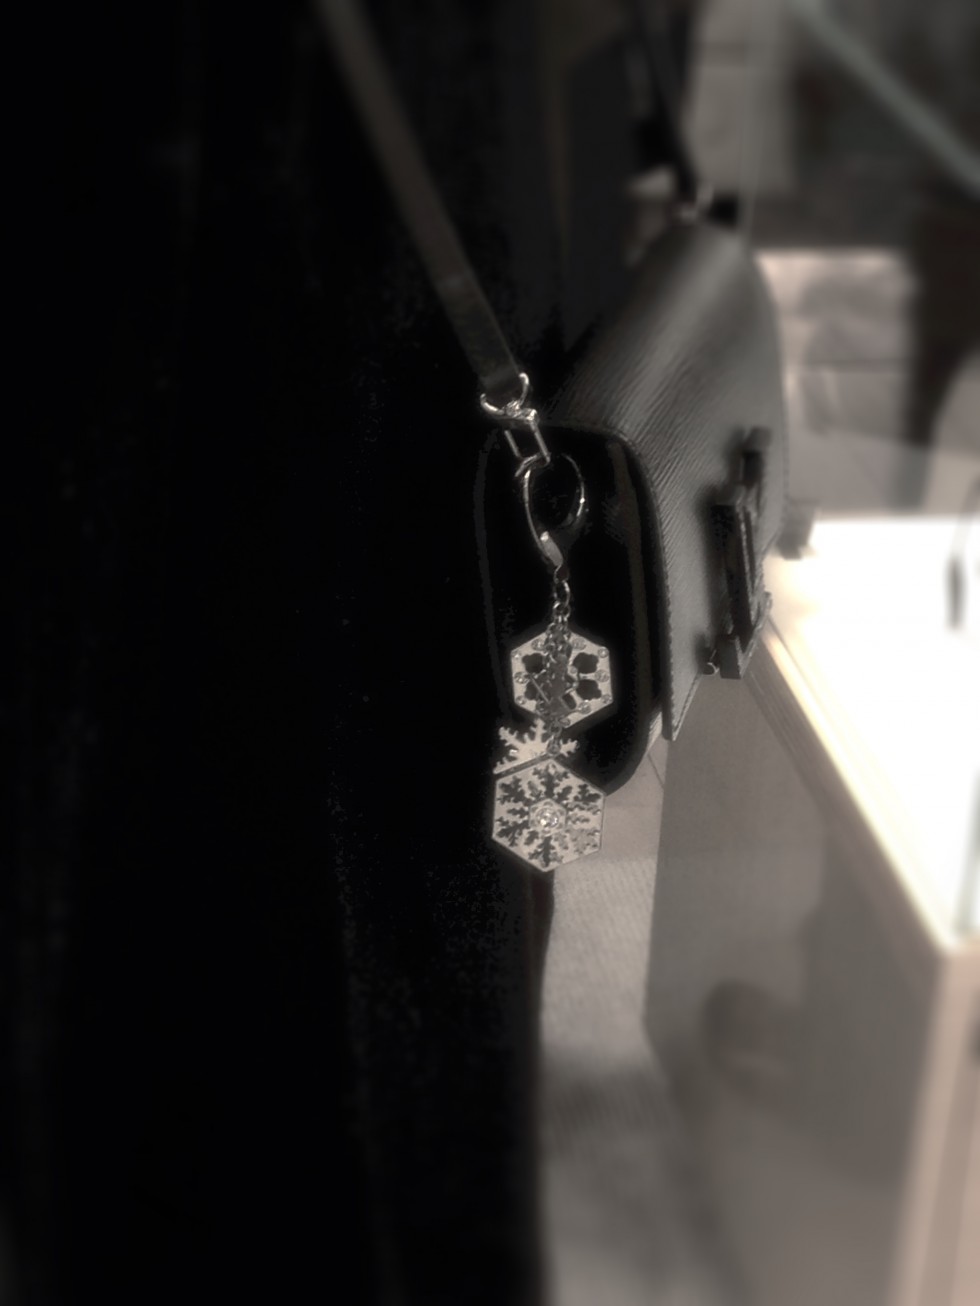 Louis Vuitton snowflake key chain